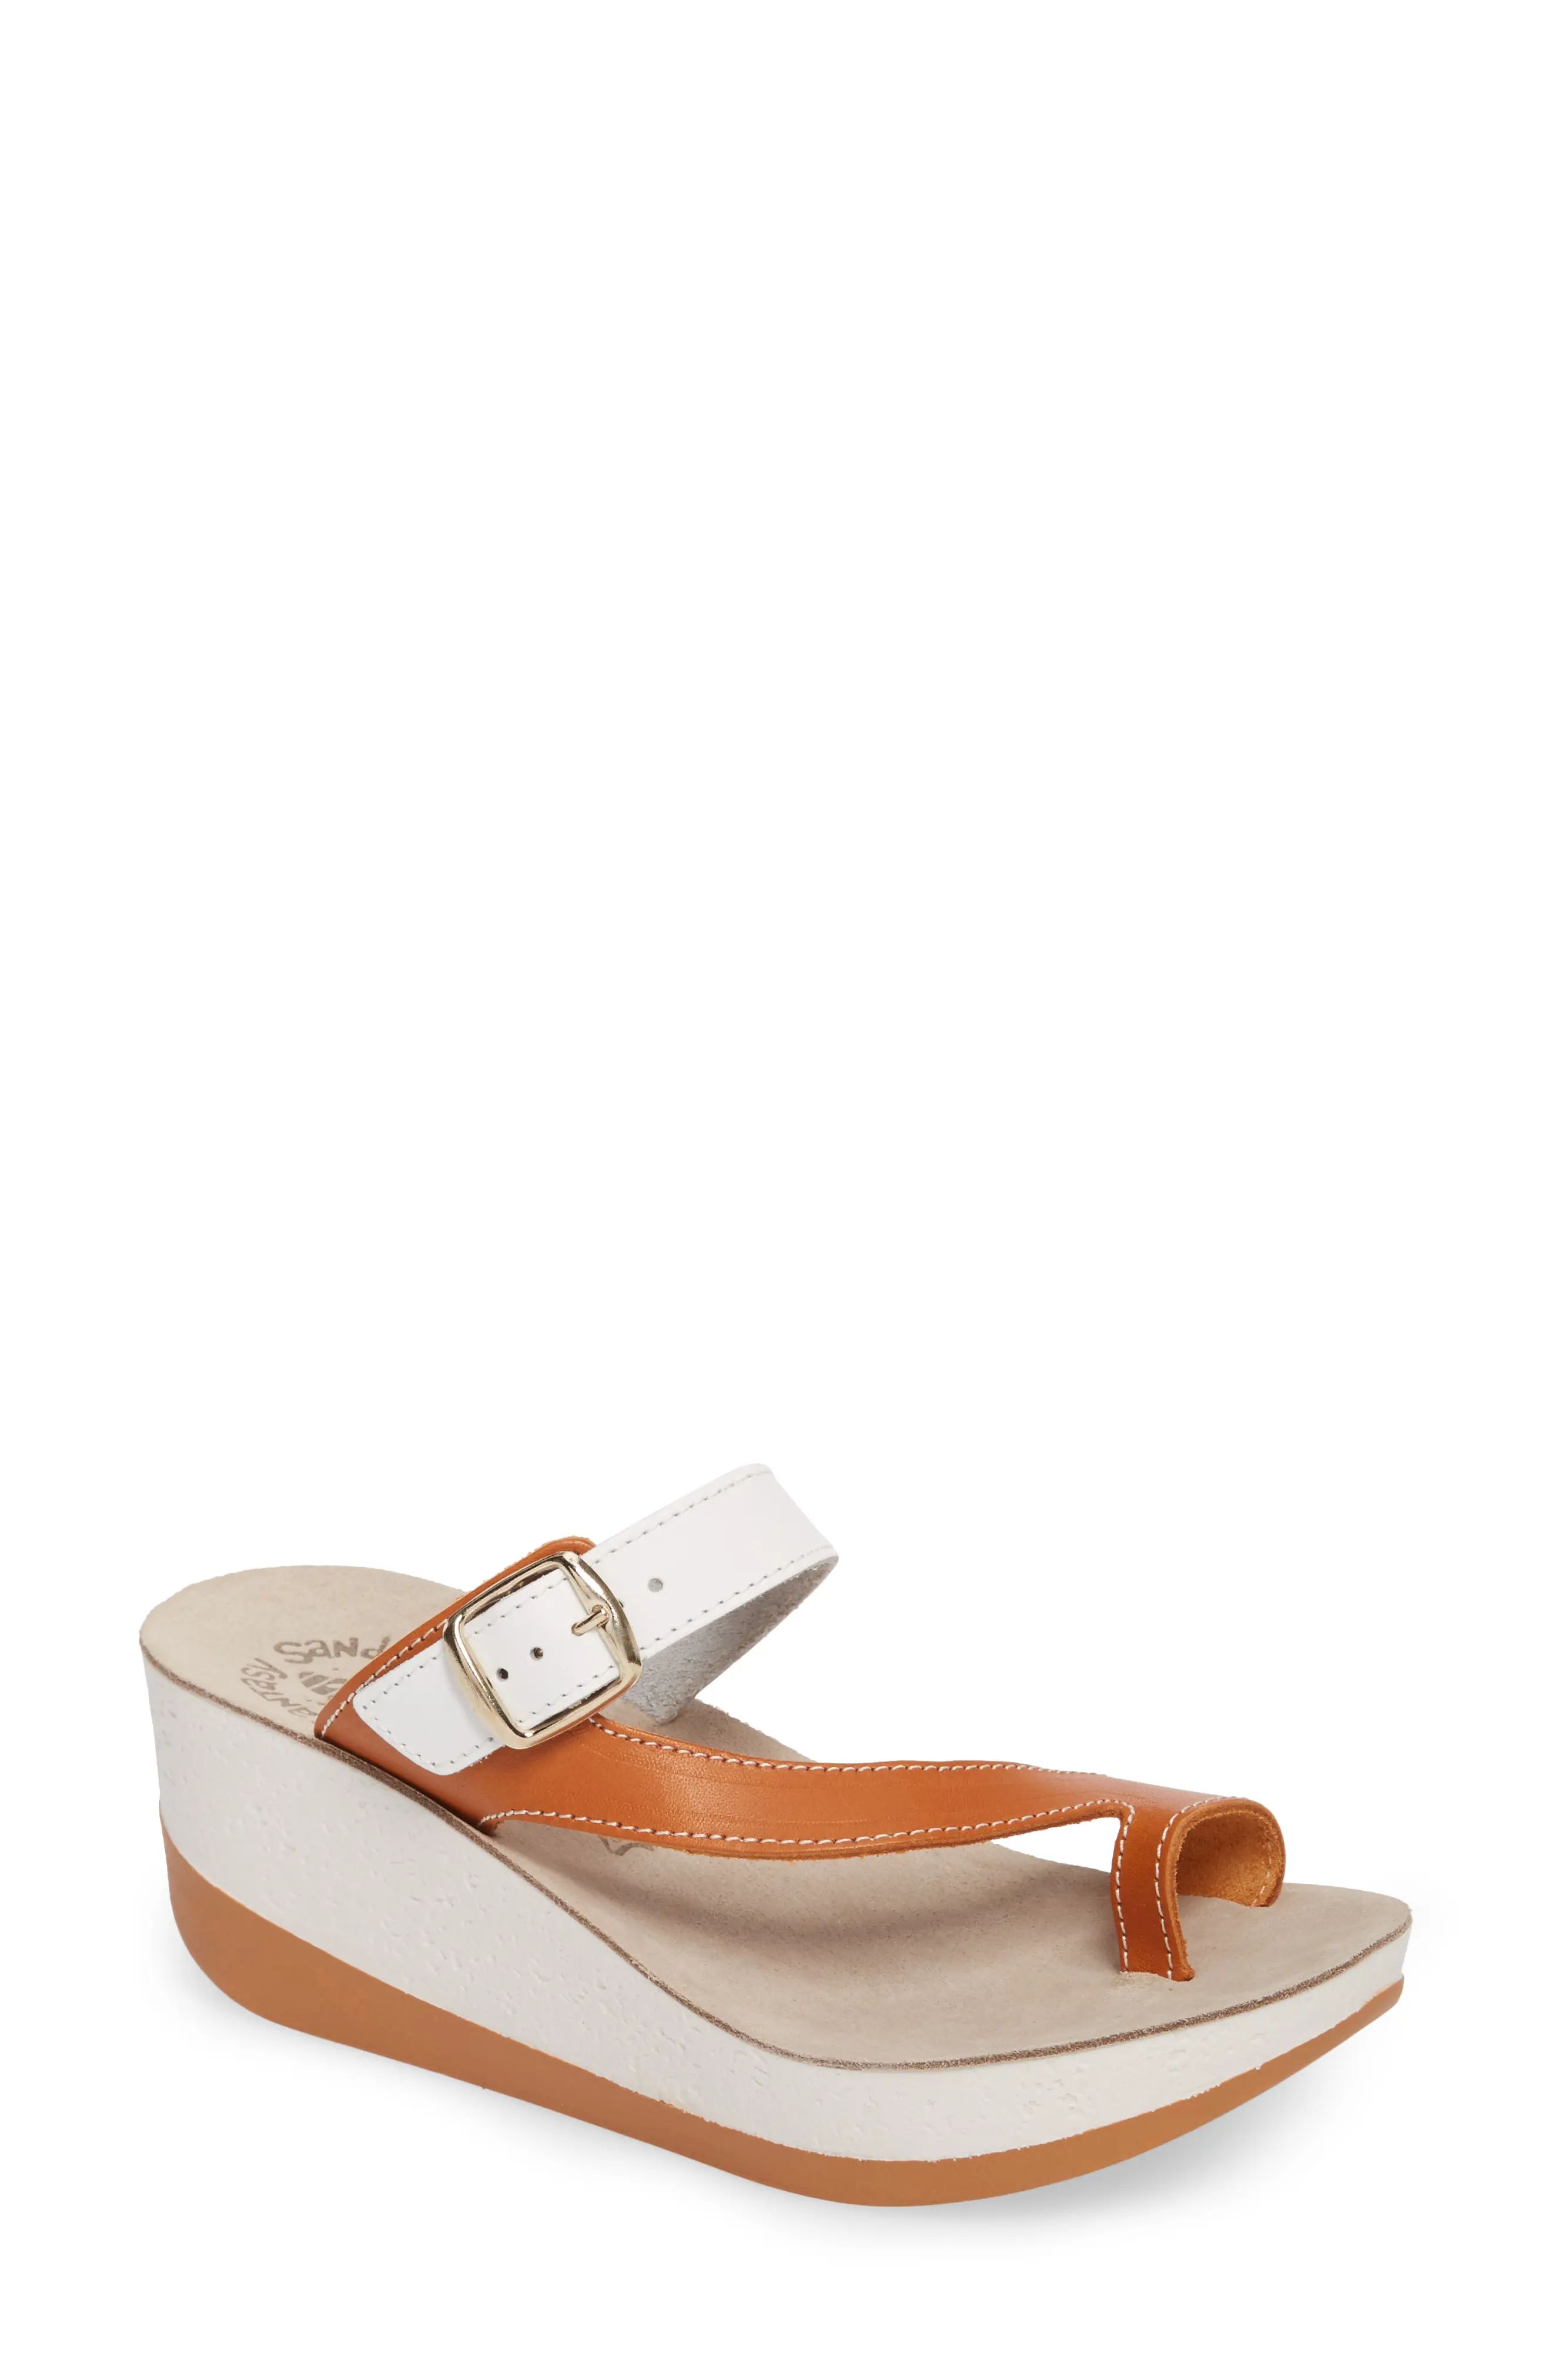 Women's Fantasy Sandals Felisa Wedge Sandal, Size 6US / 36EU - White | Nordstrom